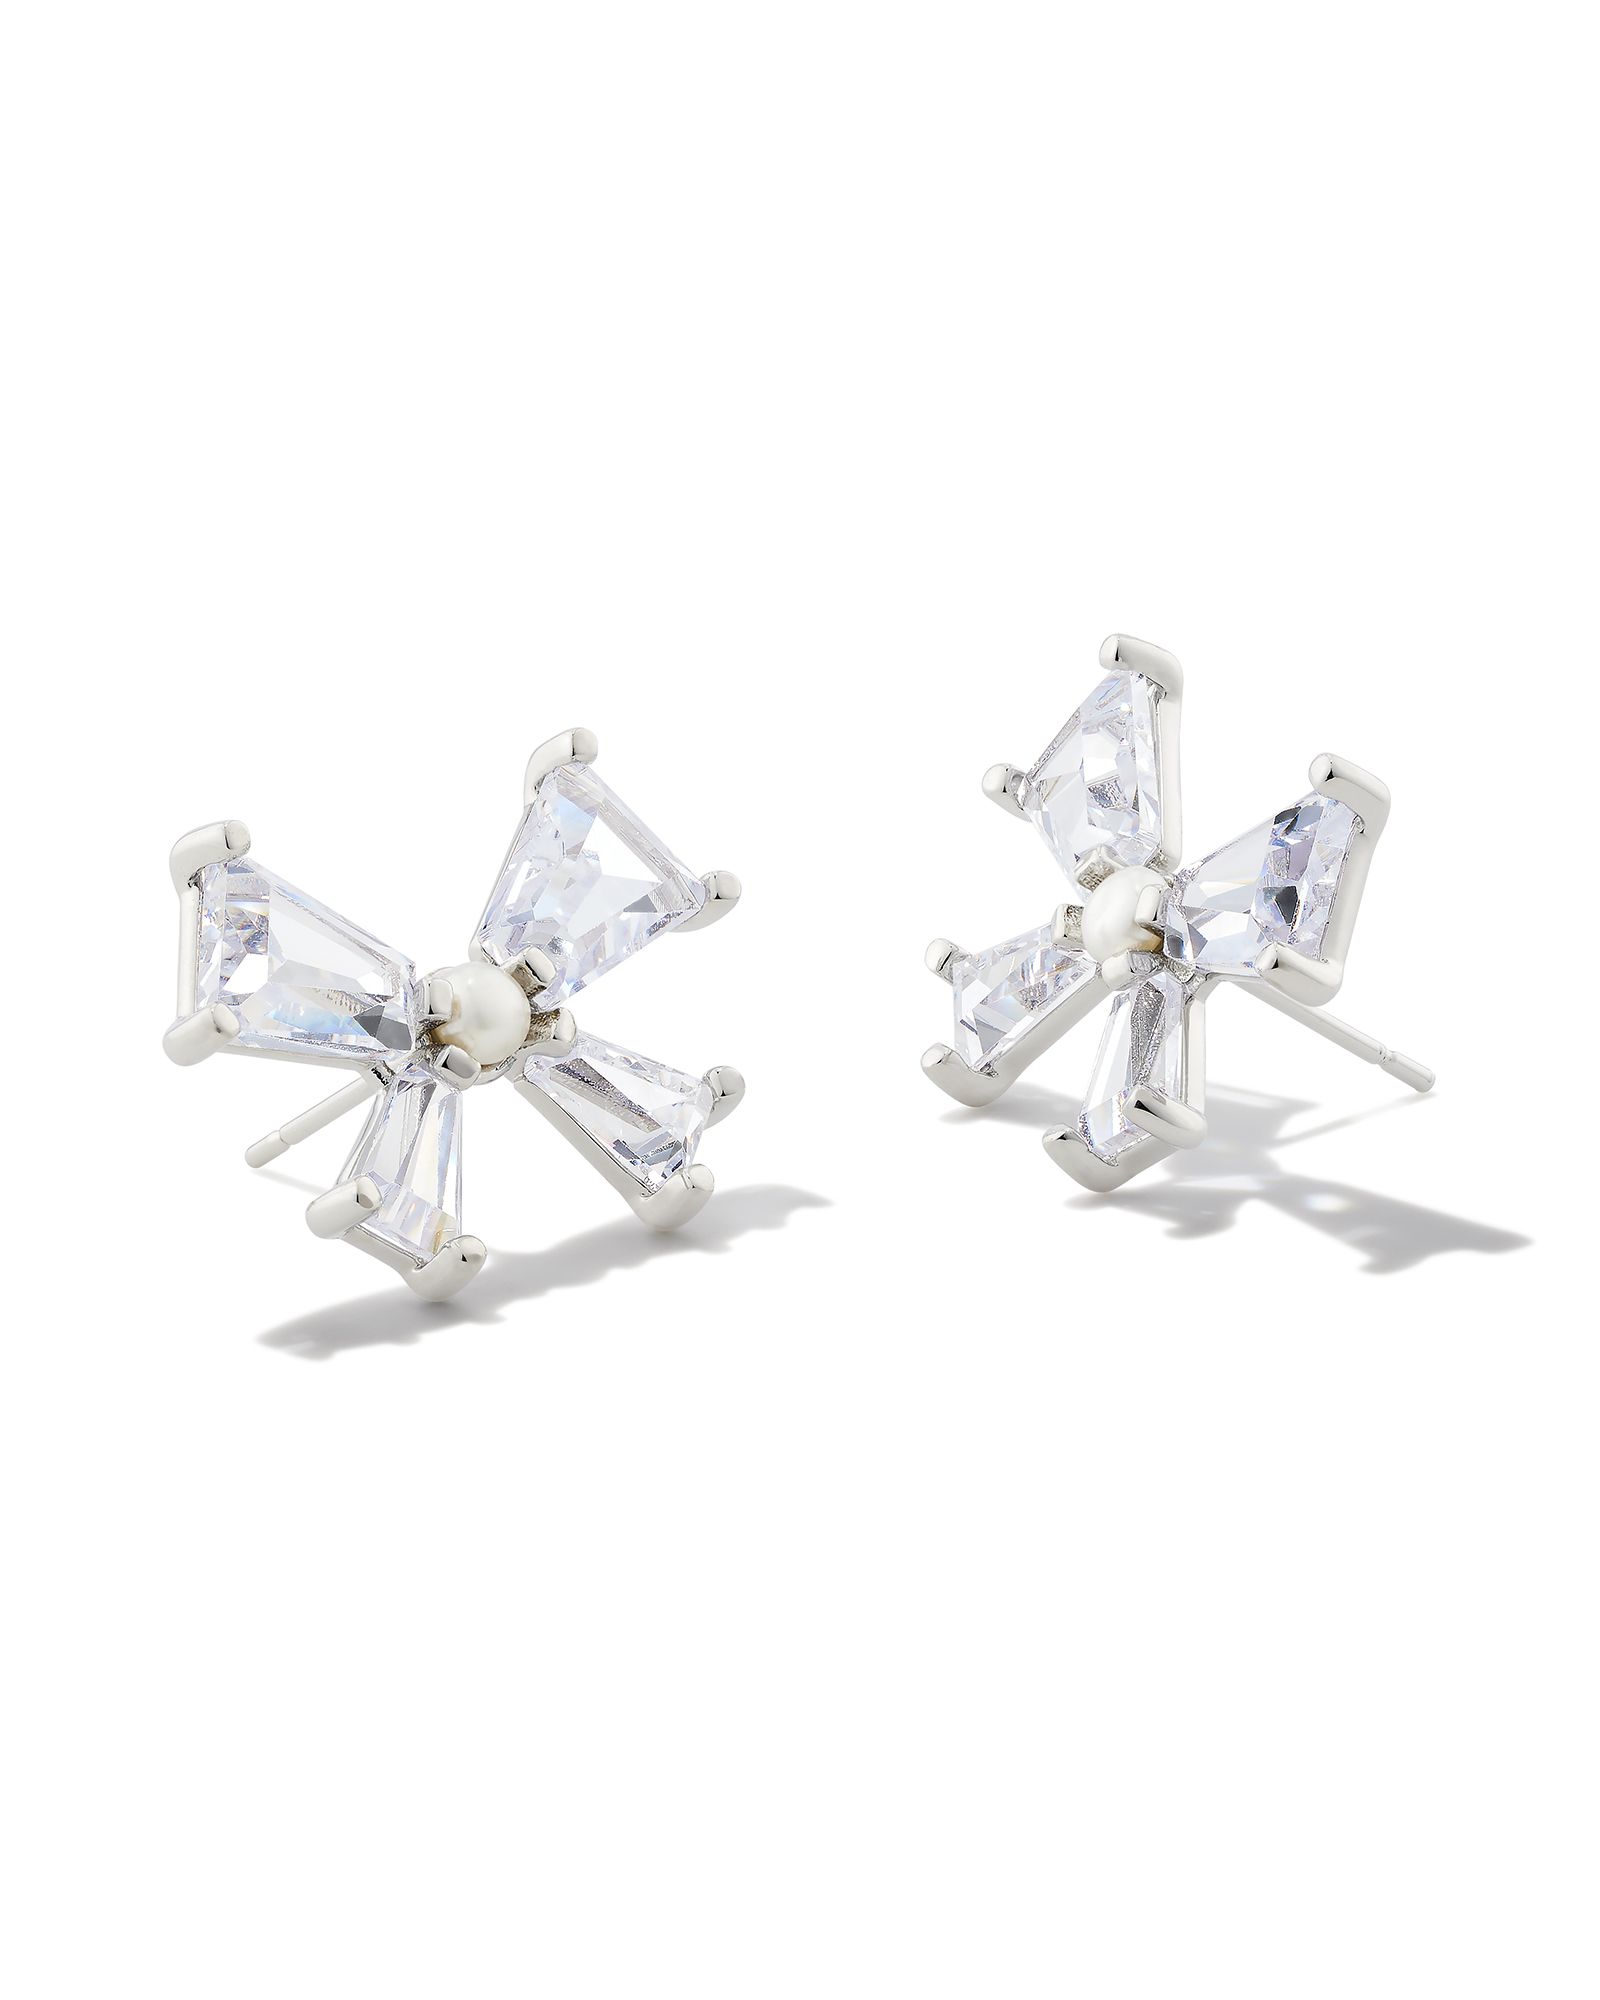 Blair Silver Bow Stud Earrings in White Crystal | Kendra Scott | Kendra Scott